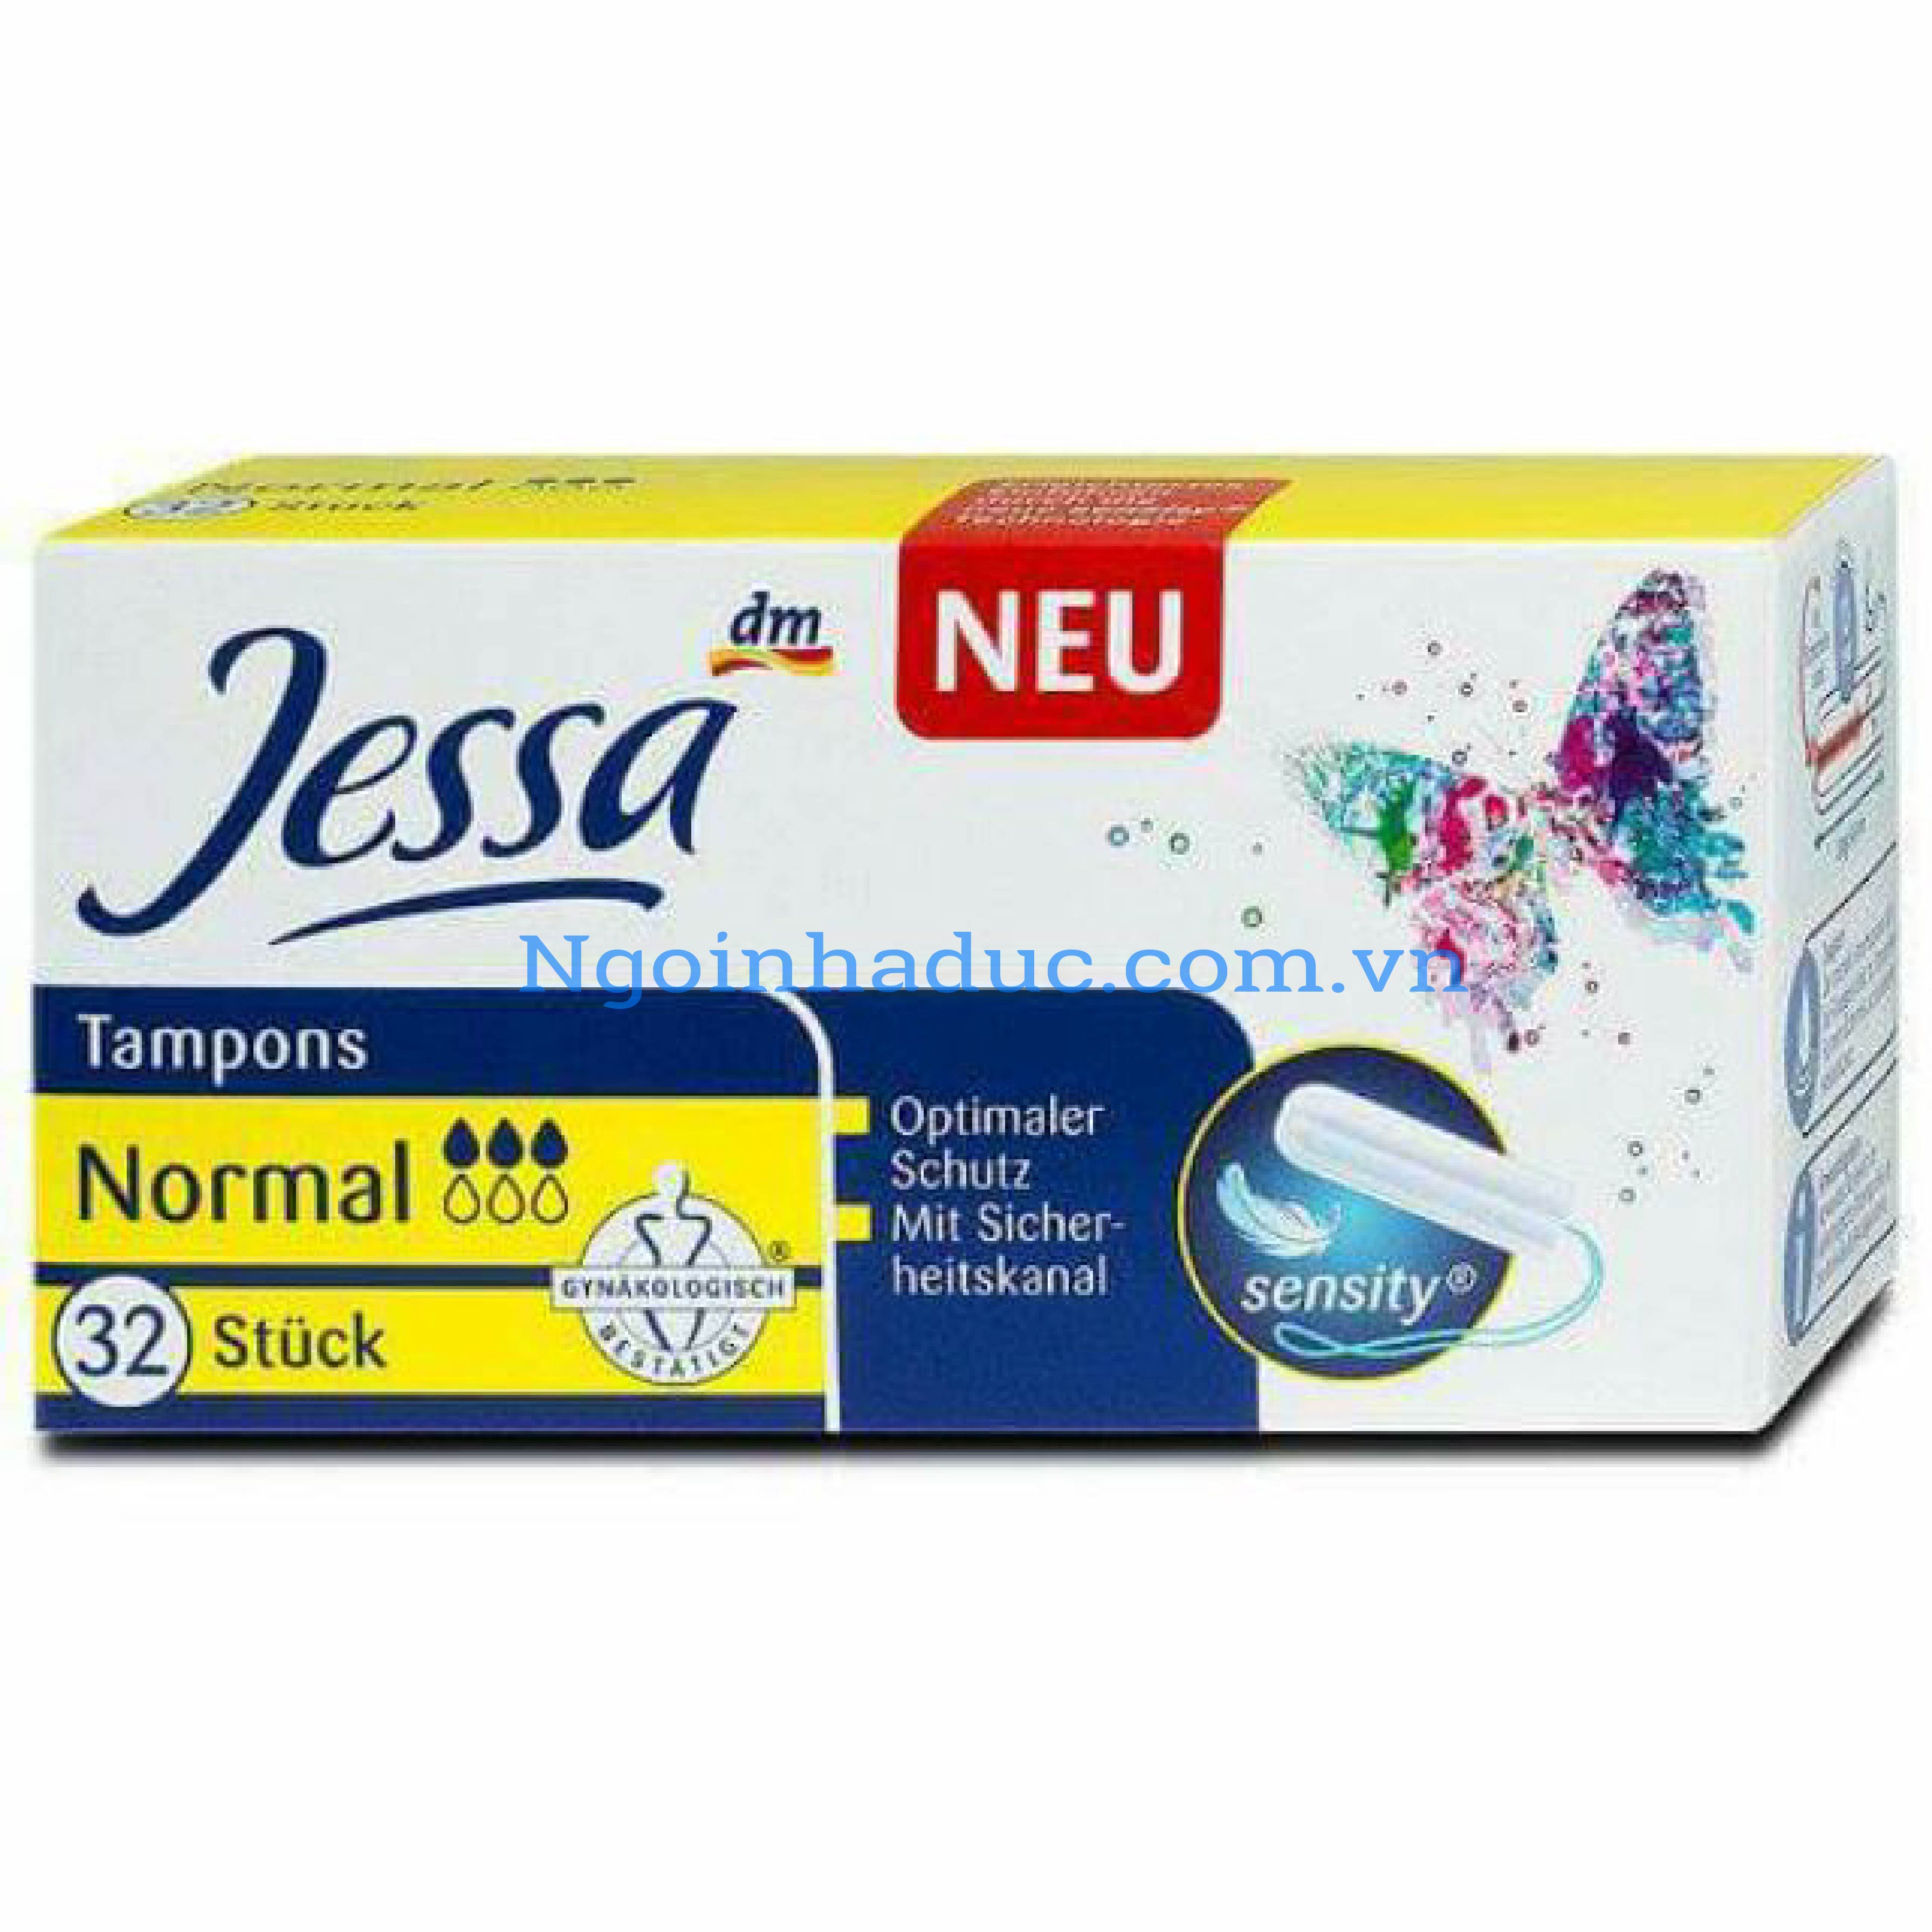 Băng vệ sinh tampon Jessa Normal 3 giọt (hộp 32c)